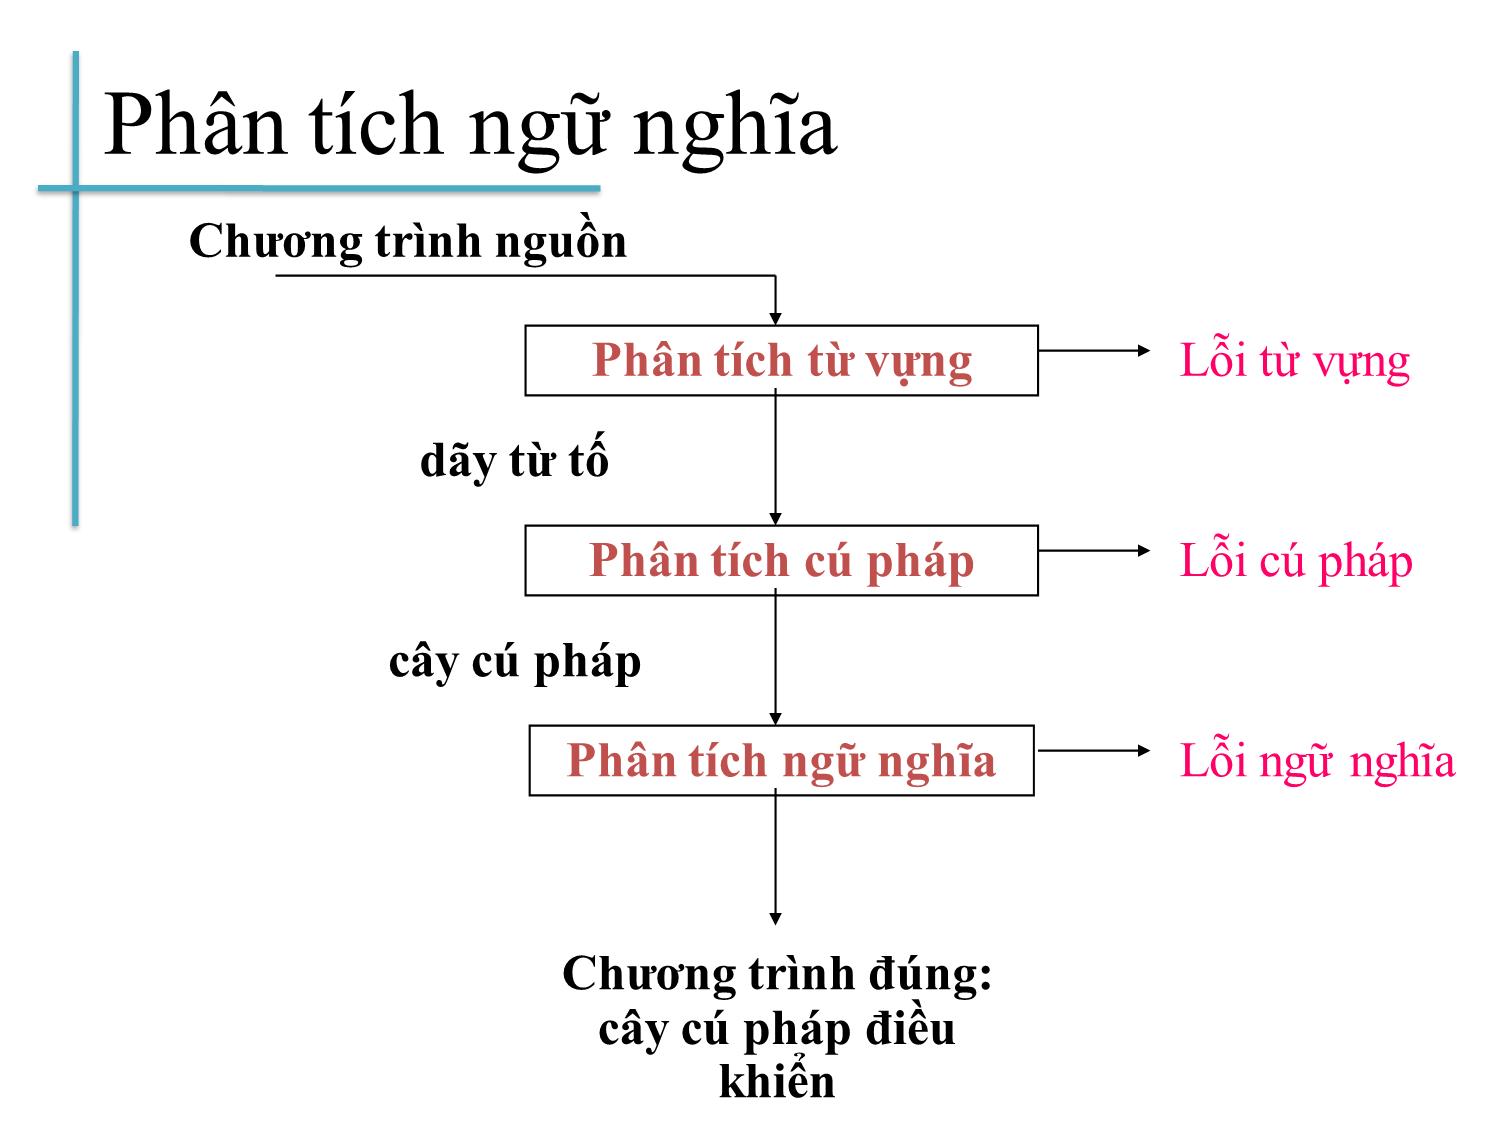 Bài giảng Chương trình dịch - Bài 5: Phân tích ngữ nghĩa - Hoàng Anh Việt trang 4